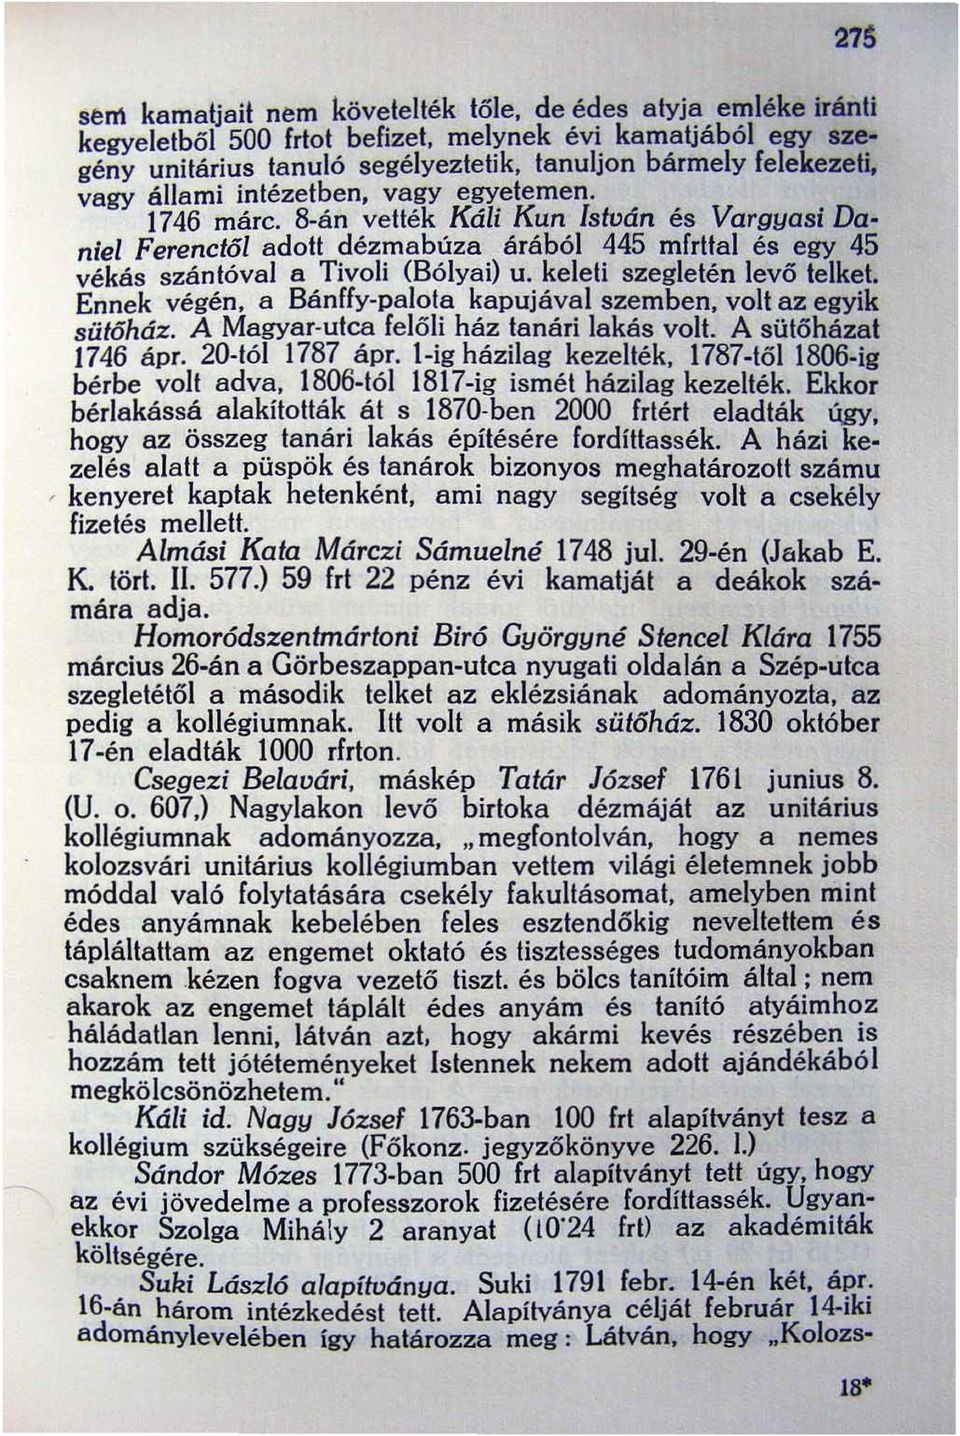 8-án vették Káli Kun István és Vargyasi Daniel Ferenctól adott dézmabúza árából 445 mfrttal és egy 45 vékás szántóval a Tivoli (Bólyai) u_ keleti szegletén levő telket. Ennek végén.